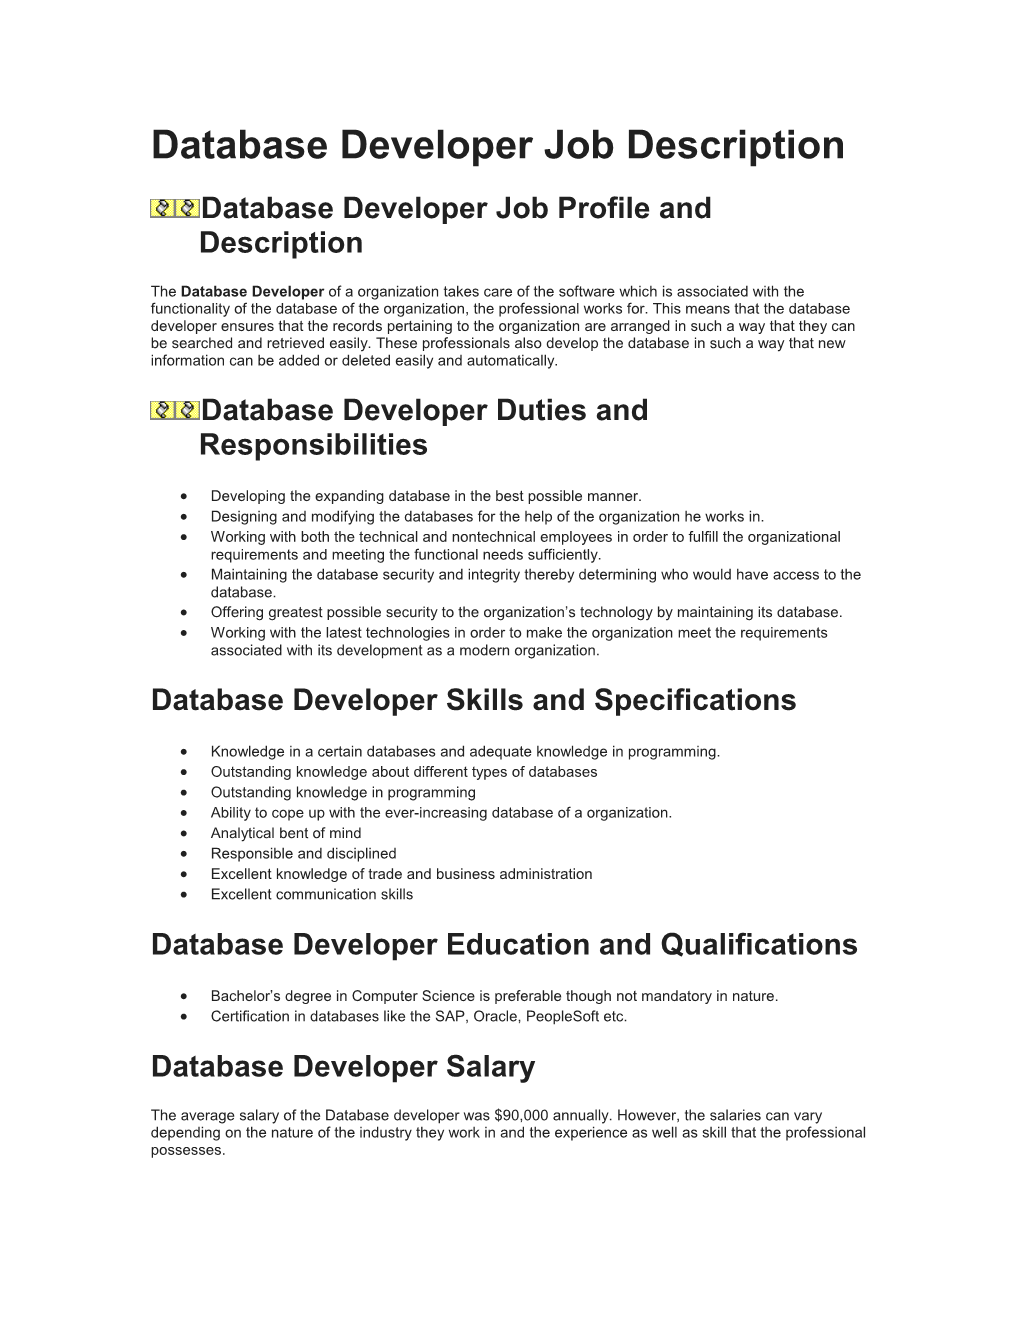 Database Developer Job Description